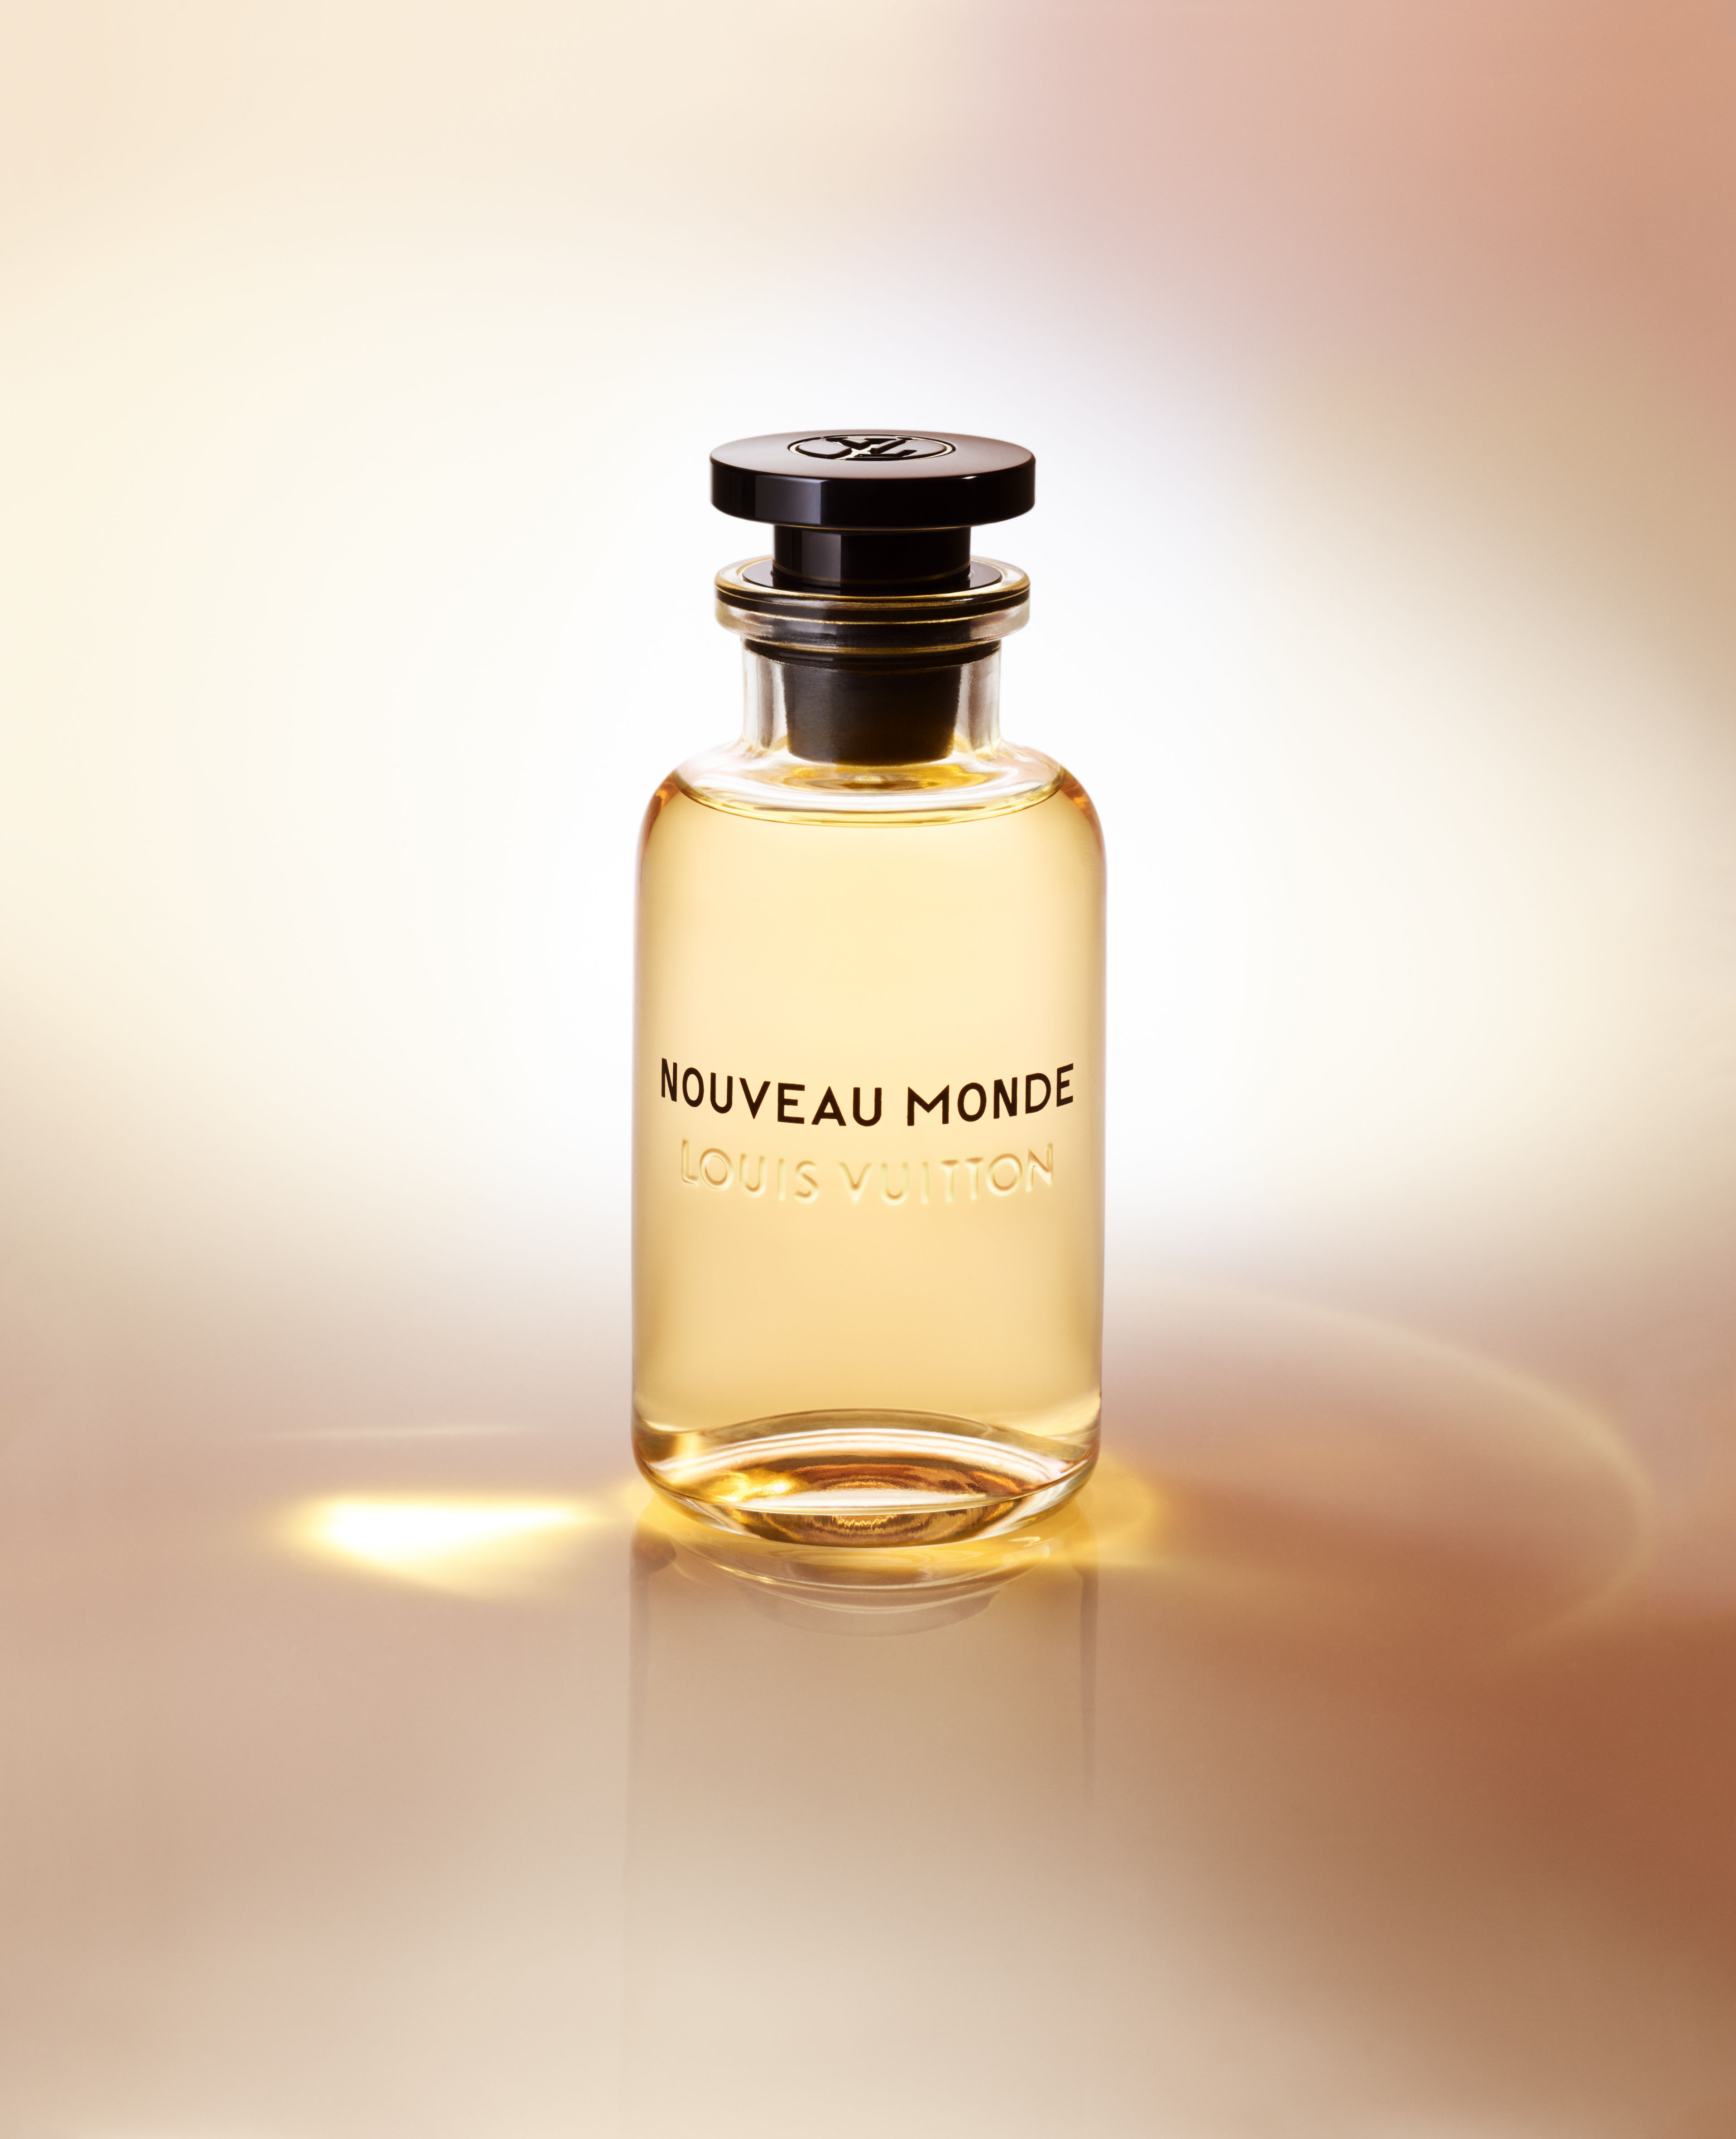 Louis Vuitton launches its first men's fragrance line, Les Parfums for Men